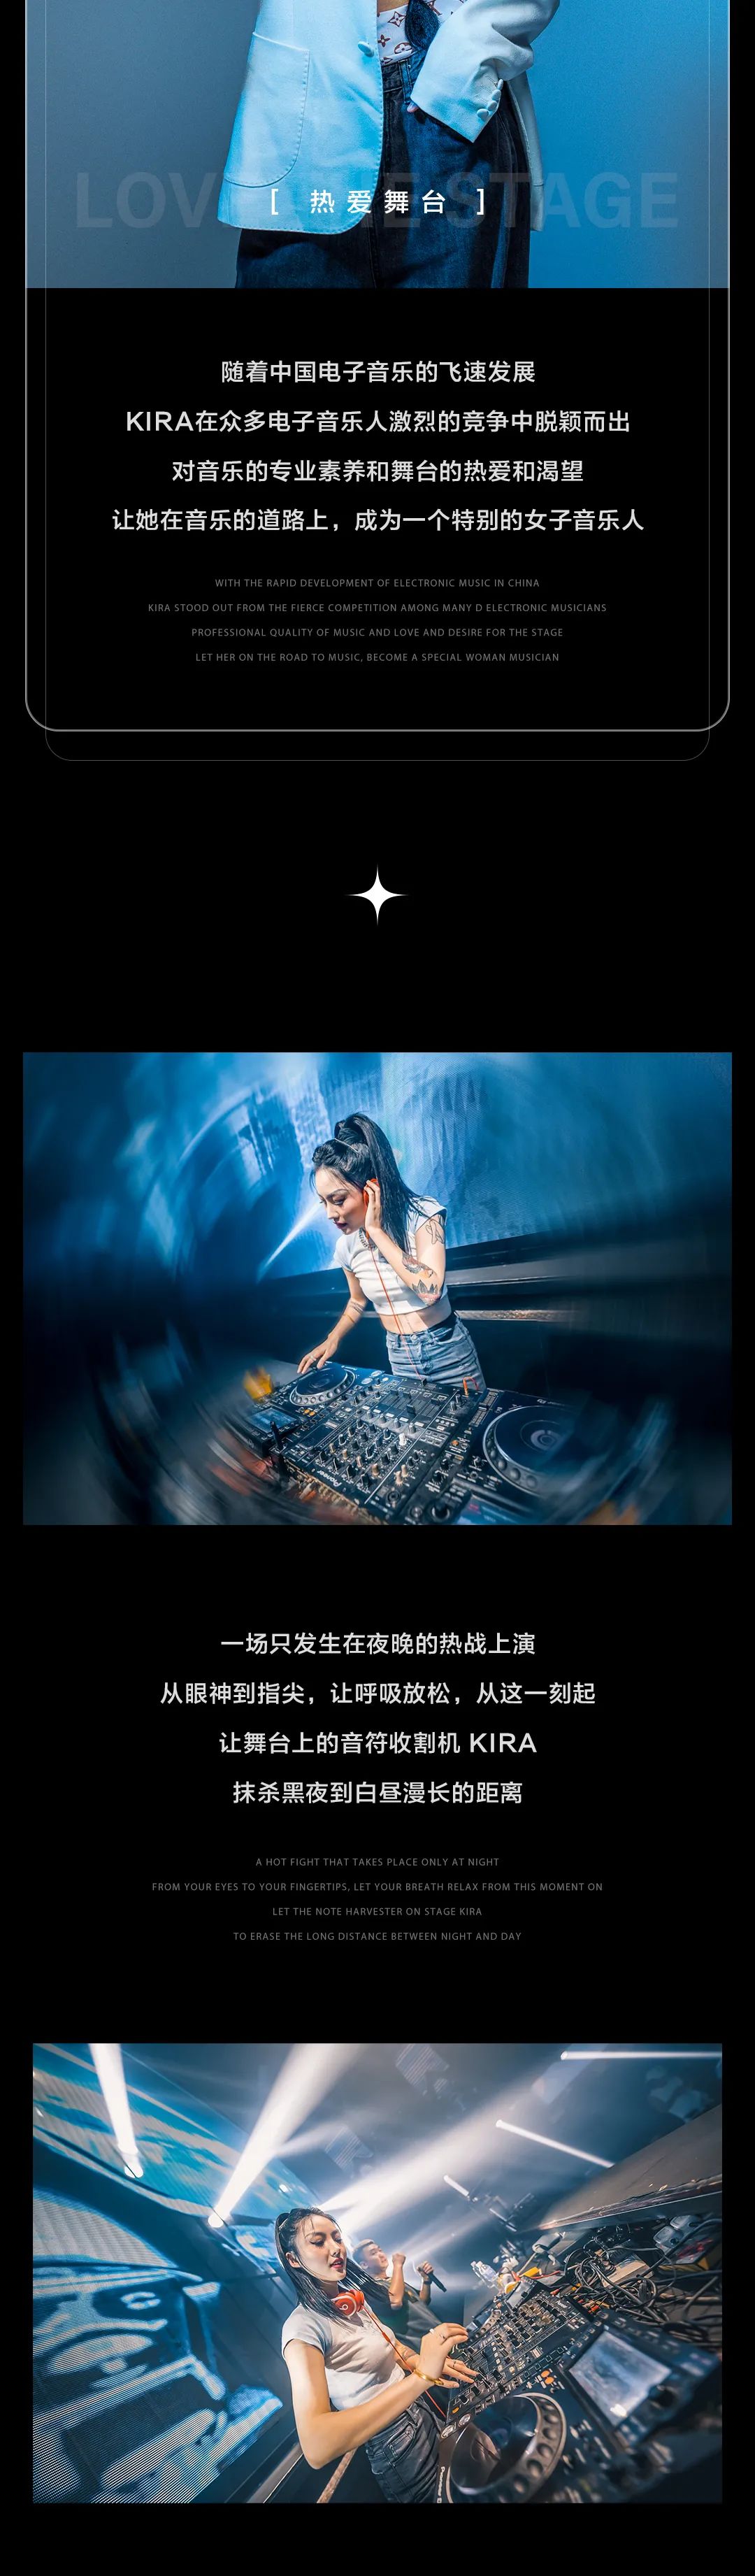 8.28 | DJ KIRA带你通往快乐捷径-塘厦音乐公园/MusicPark